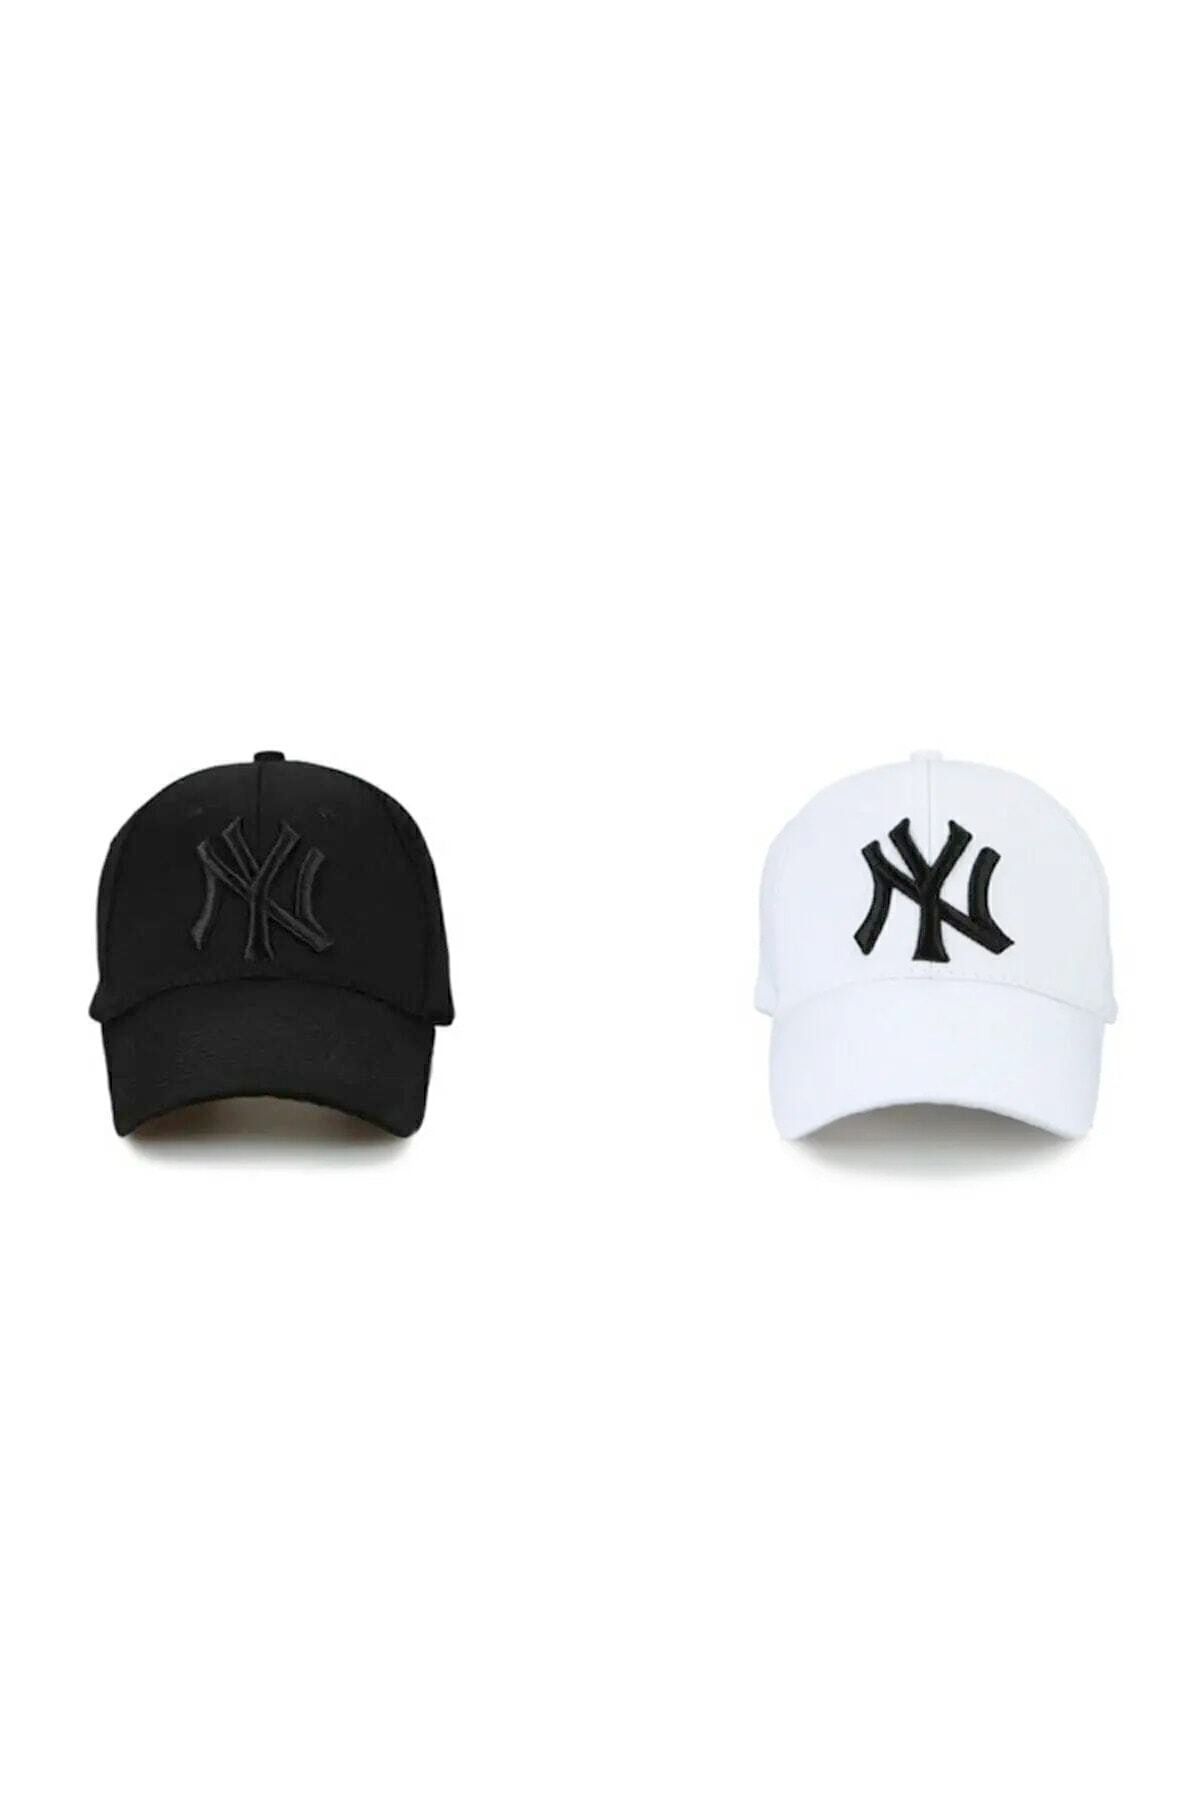 Orçun Özkarlıklı Ny New York Unisex Şapka 2 Li